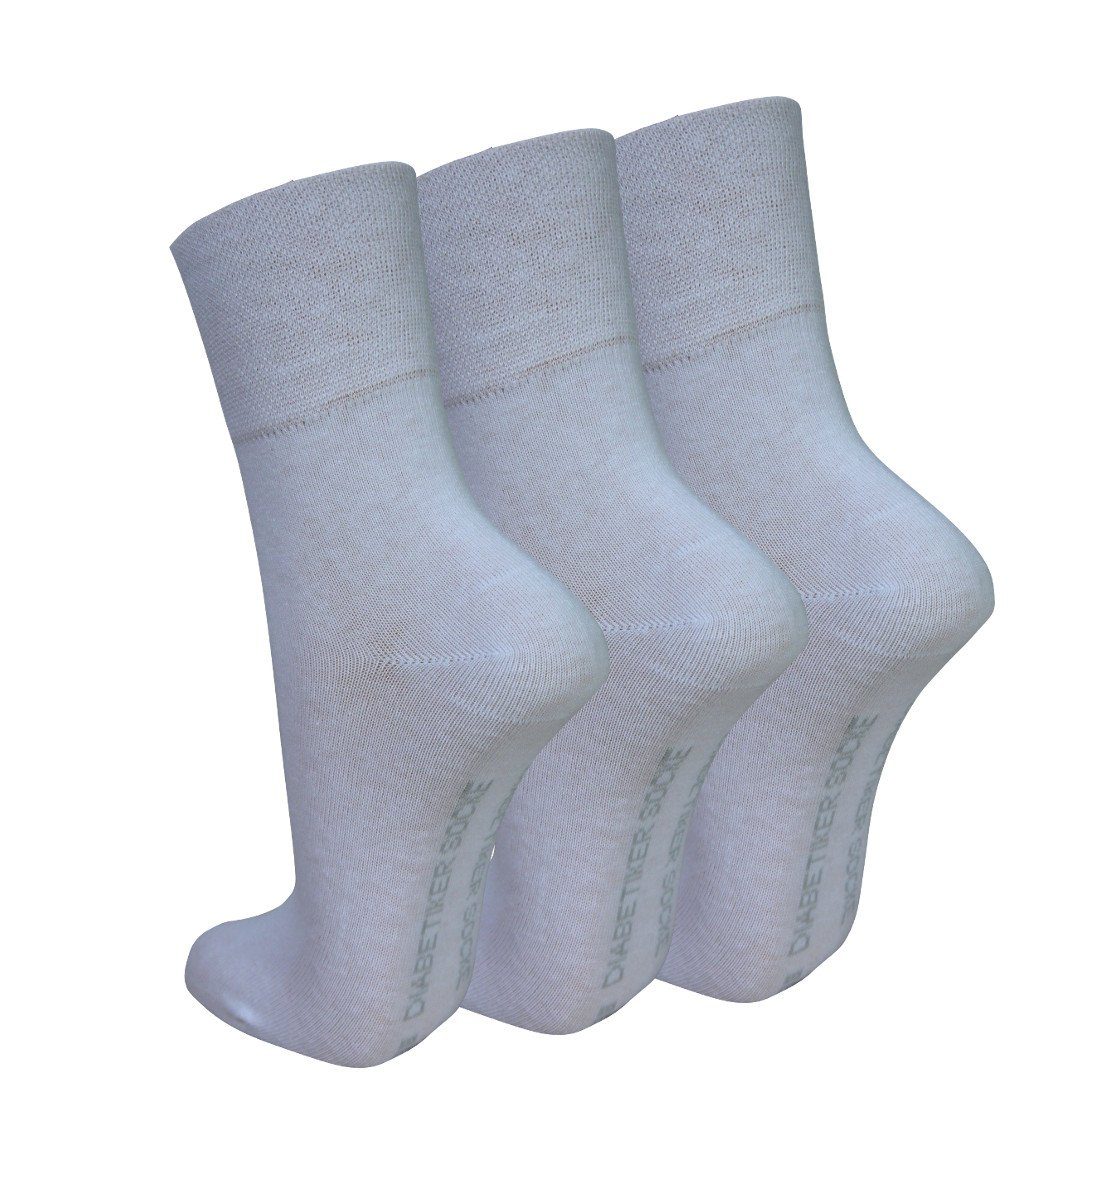 Diabetiker 6 Paar) geeignet, Strümpfe für Riese Diabetikersocken Paar (6- Socken